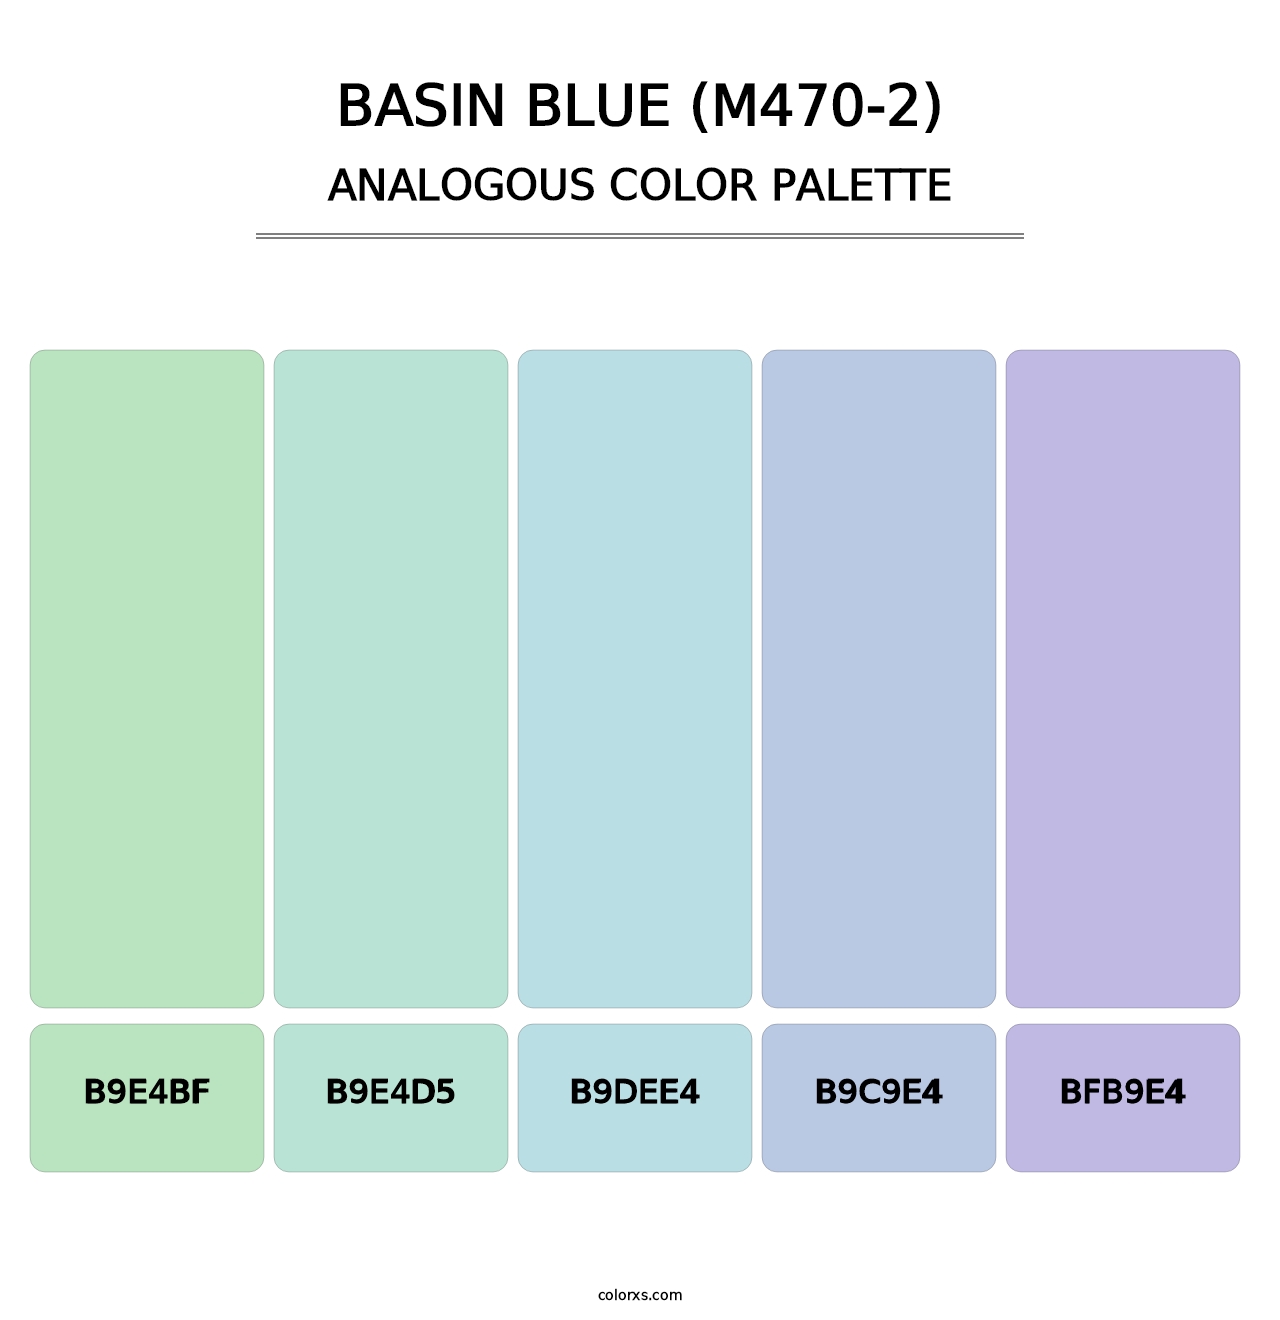 Basin Blue (M470-2) - Analogous Color Palette